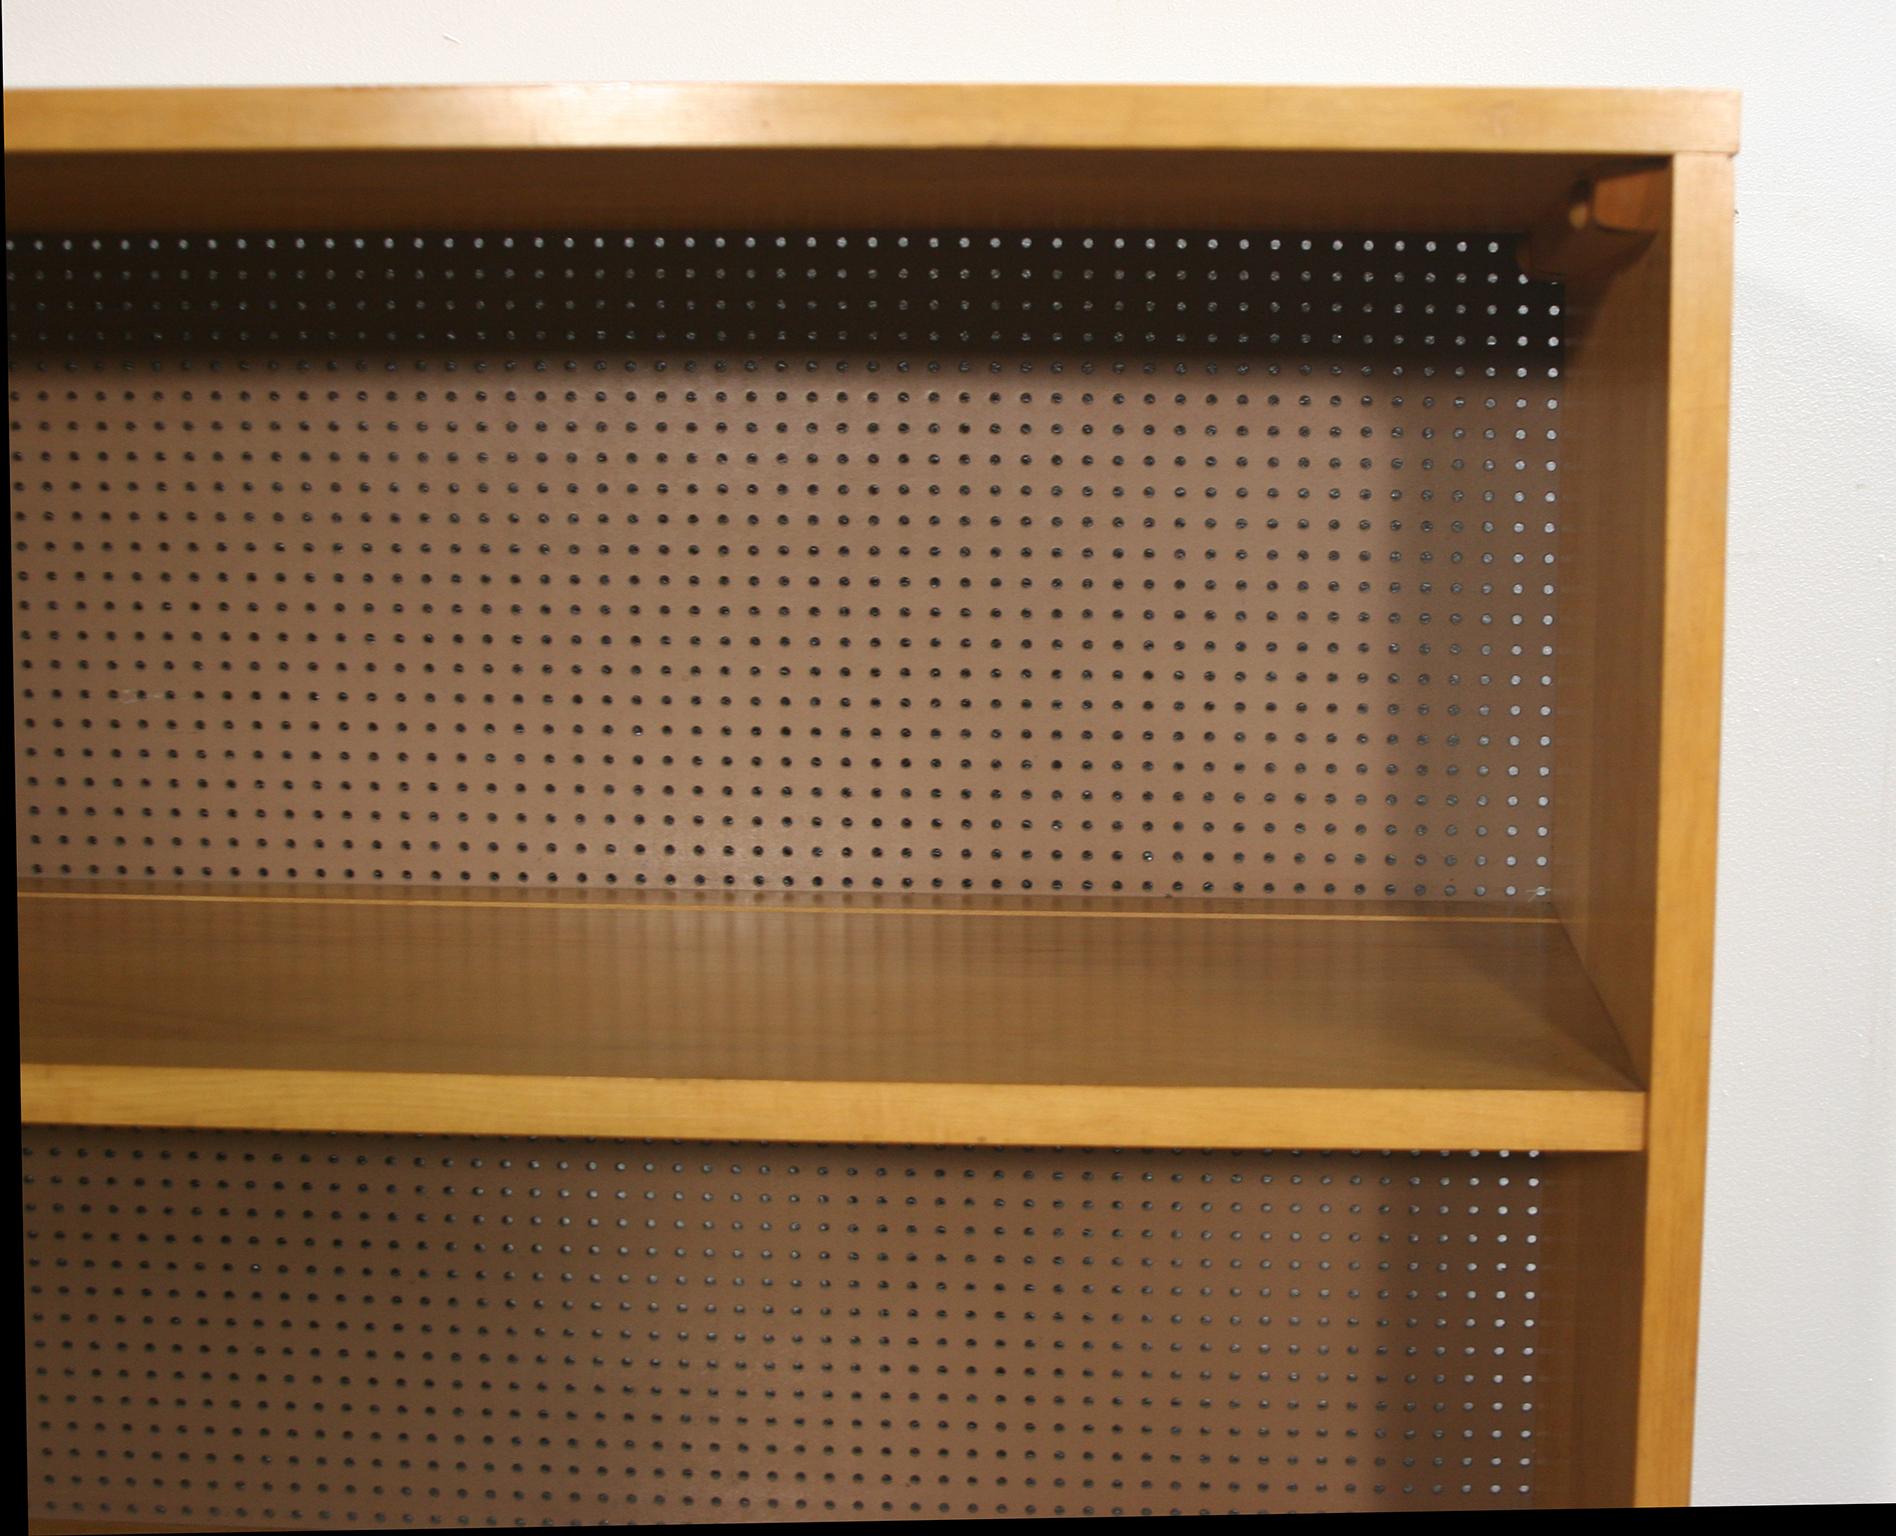 20th Century Midcentury Paul McCobb Single Bookcase #1516 Maple Perforated Back Iron Base